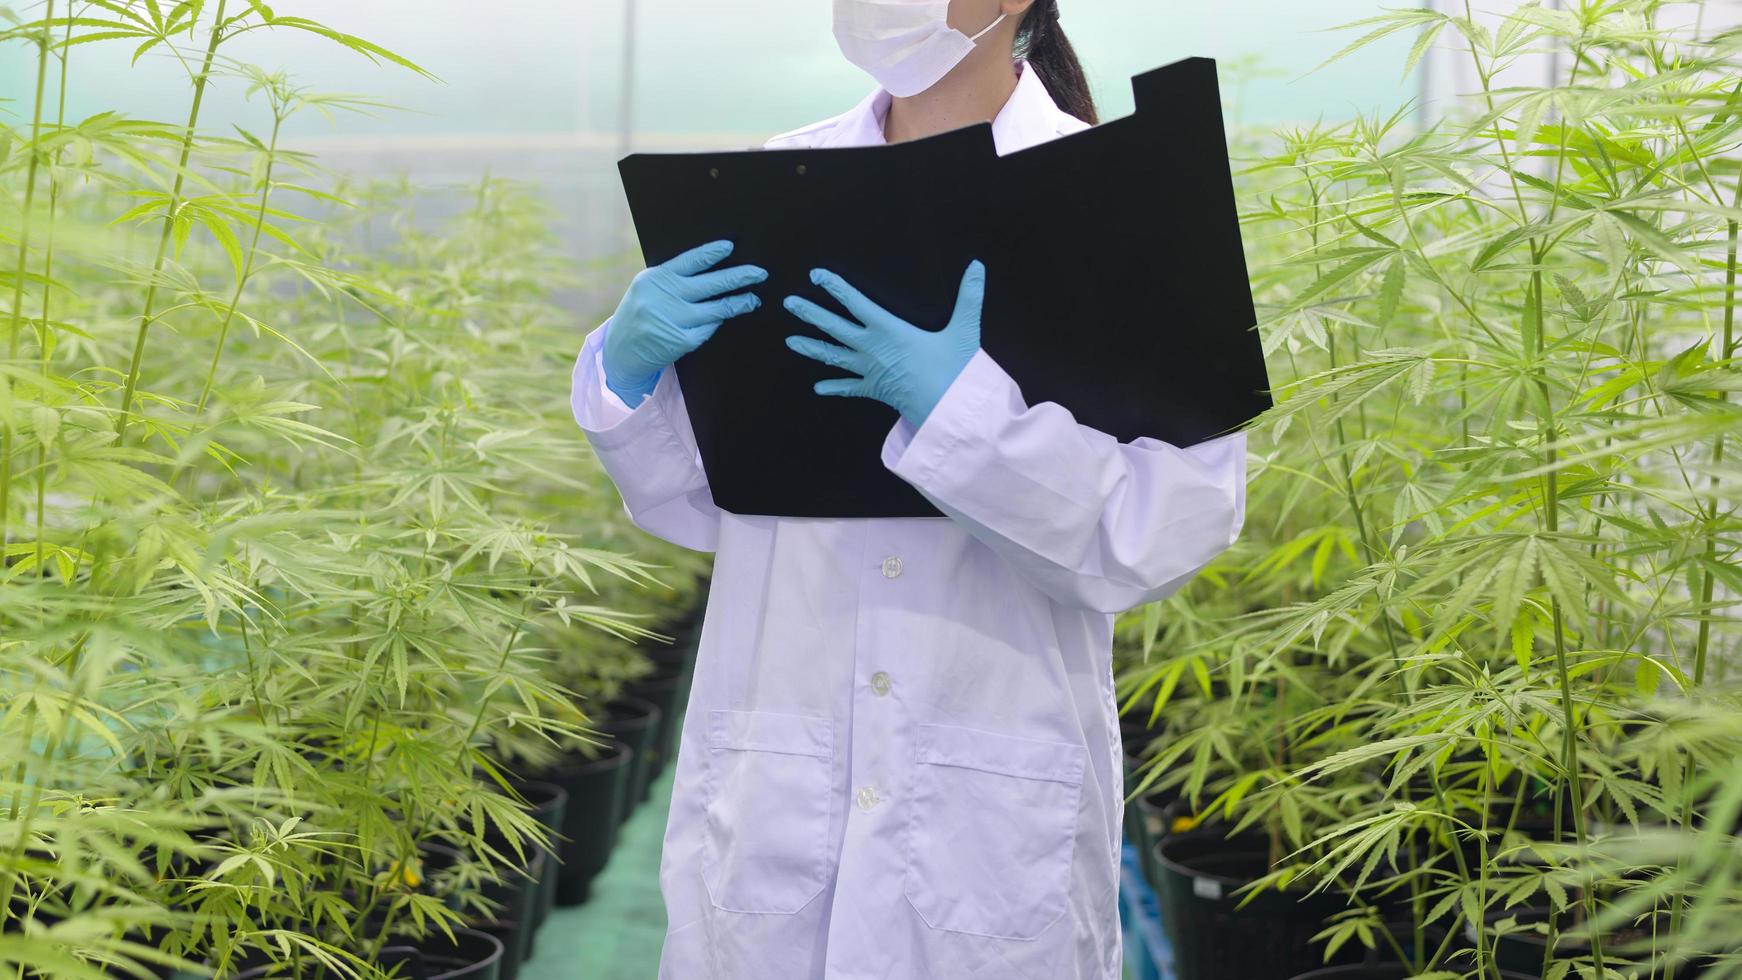 concetto di piantagione di cannabis per uso medico, uno scienziato sta raccogliendo dati sulla fattoria indoor di cannabis sativa foto